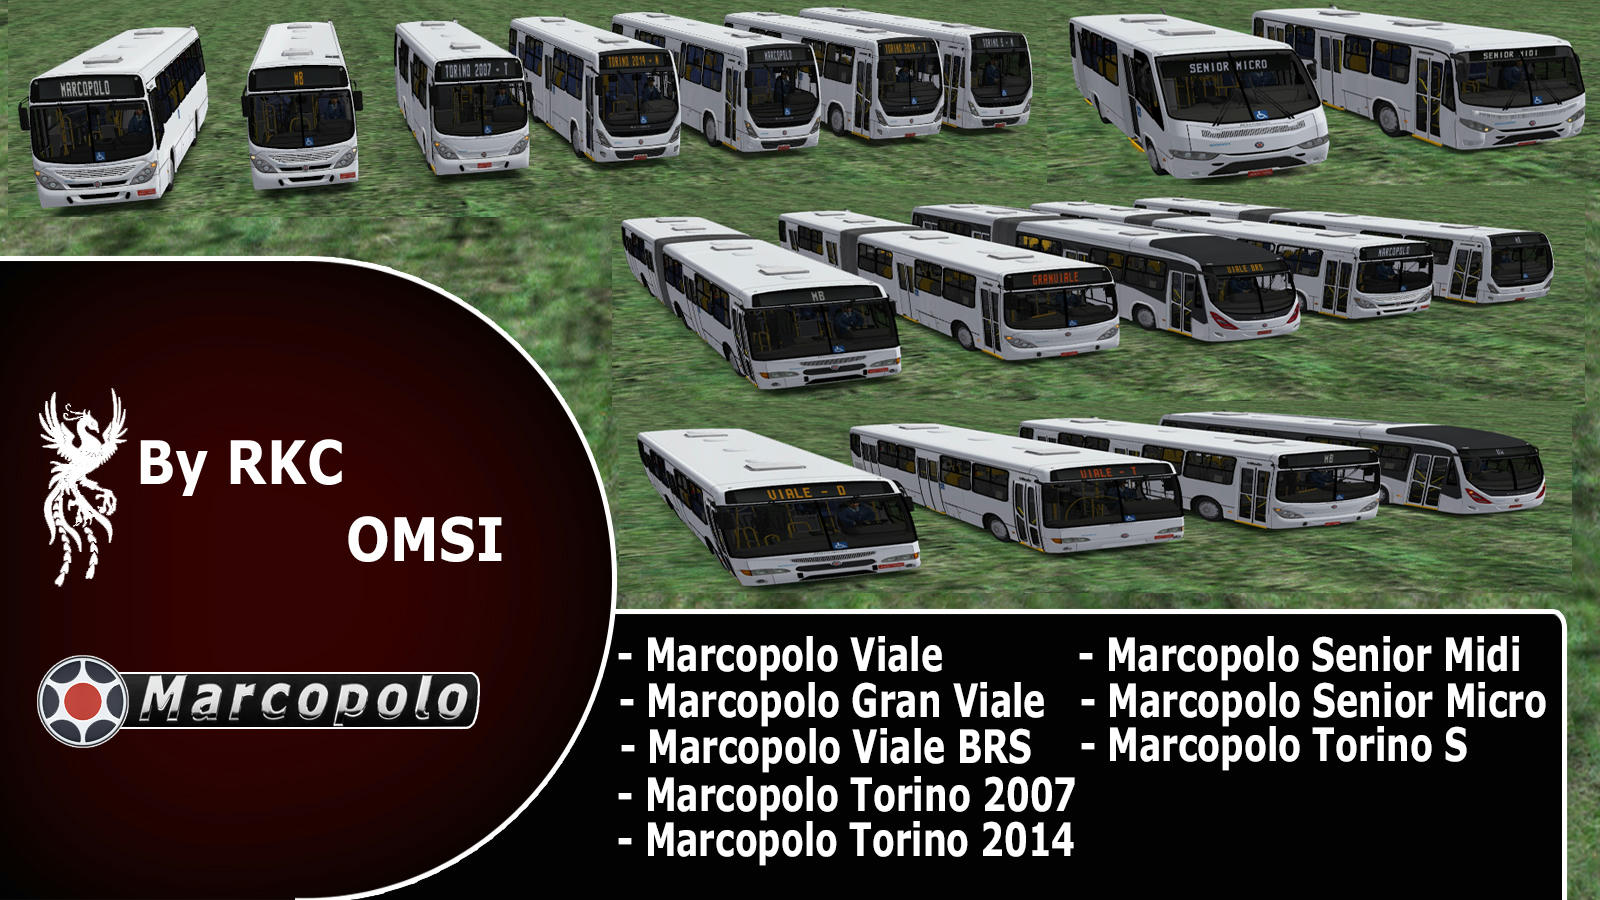 Marcopolo Pack - OMSI 1e2 T26vrdopwm3b9v7zg